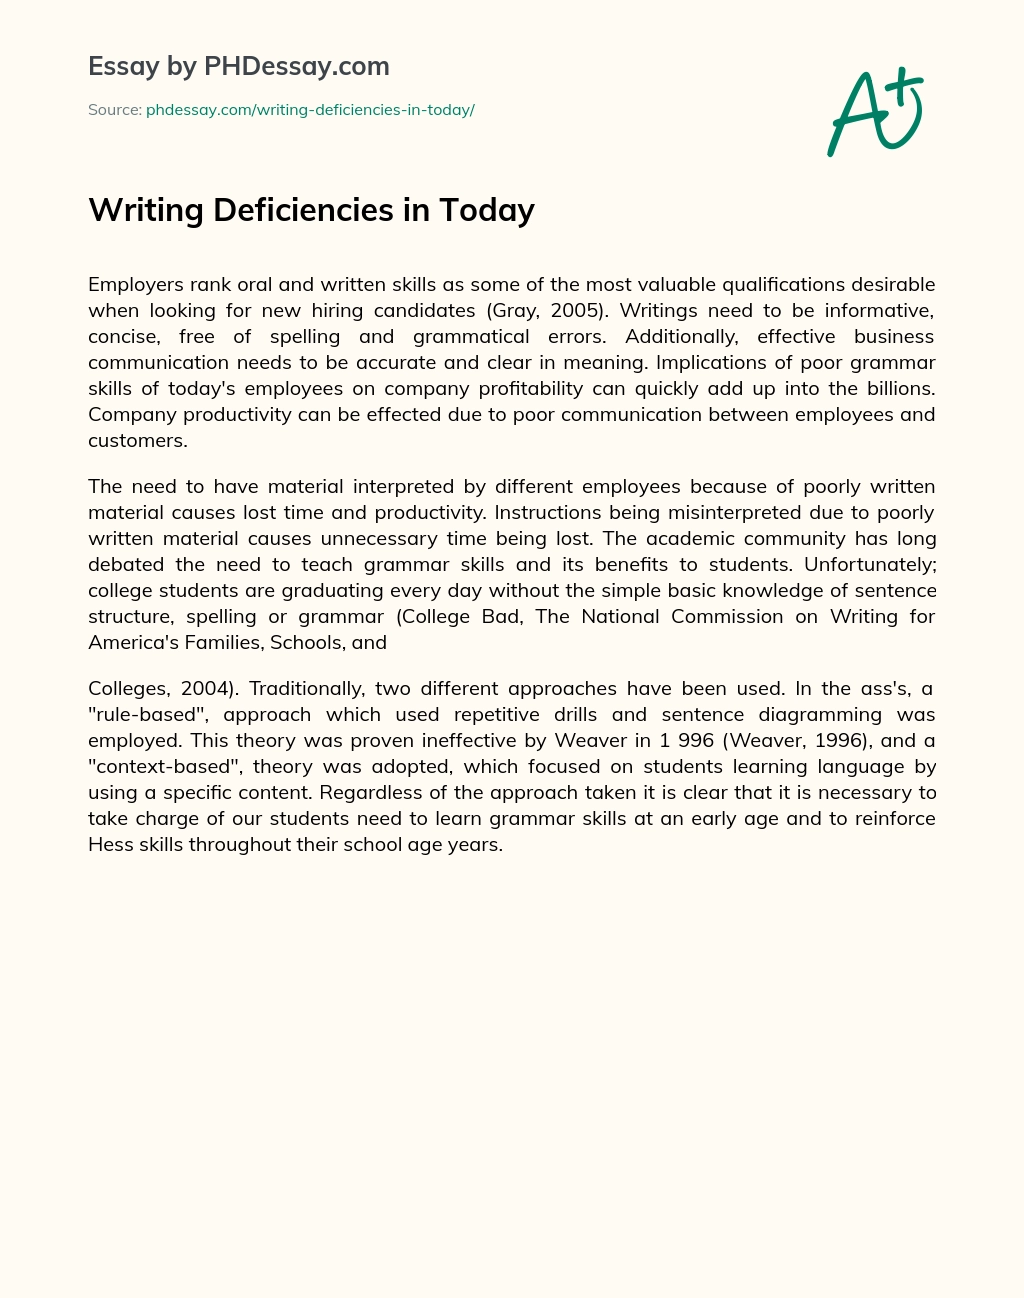 Writing Deficiencies in Today essay